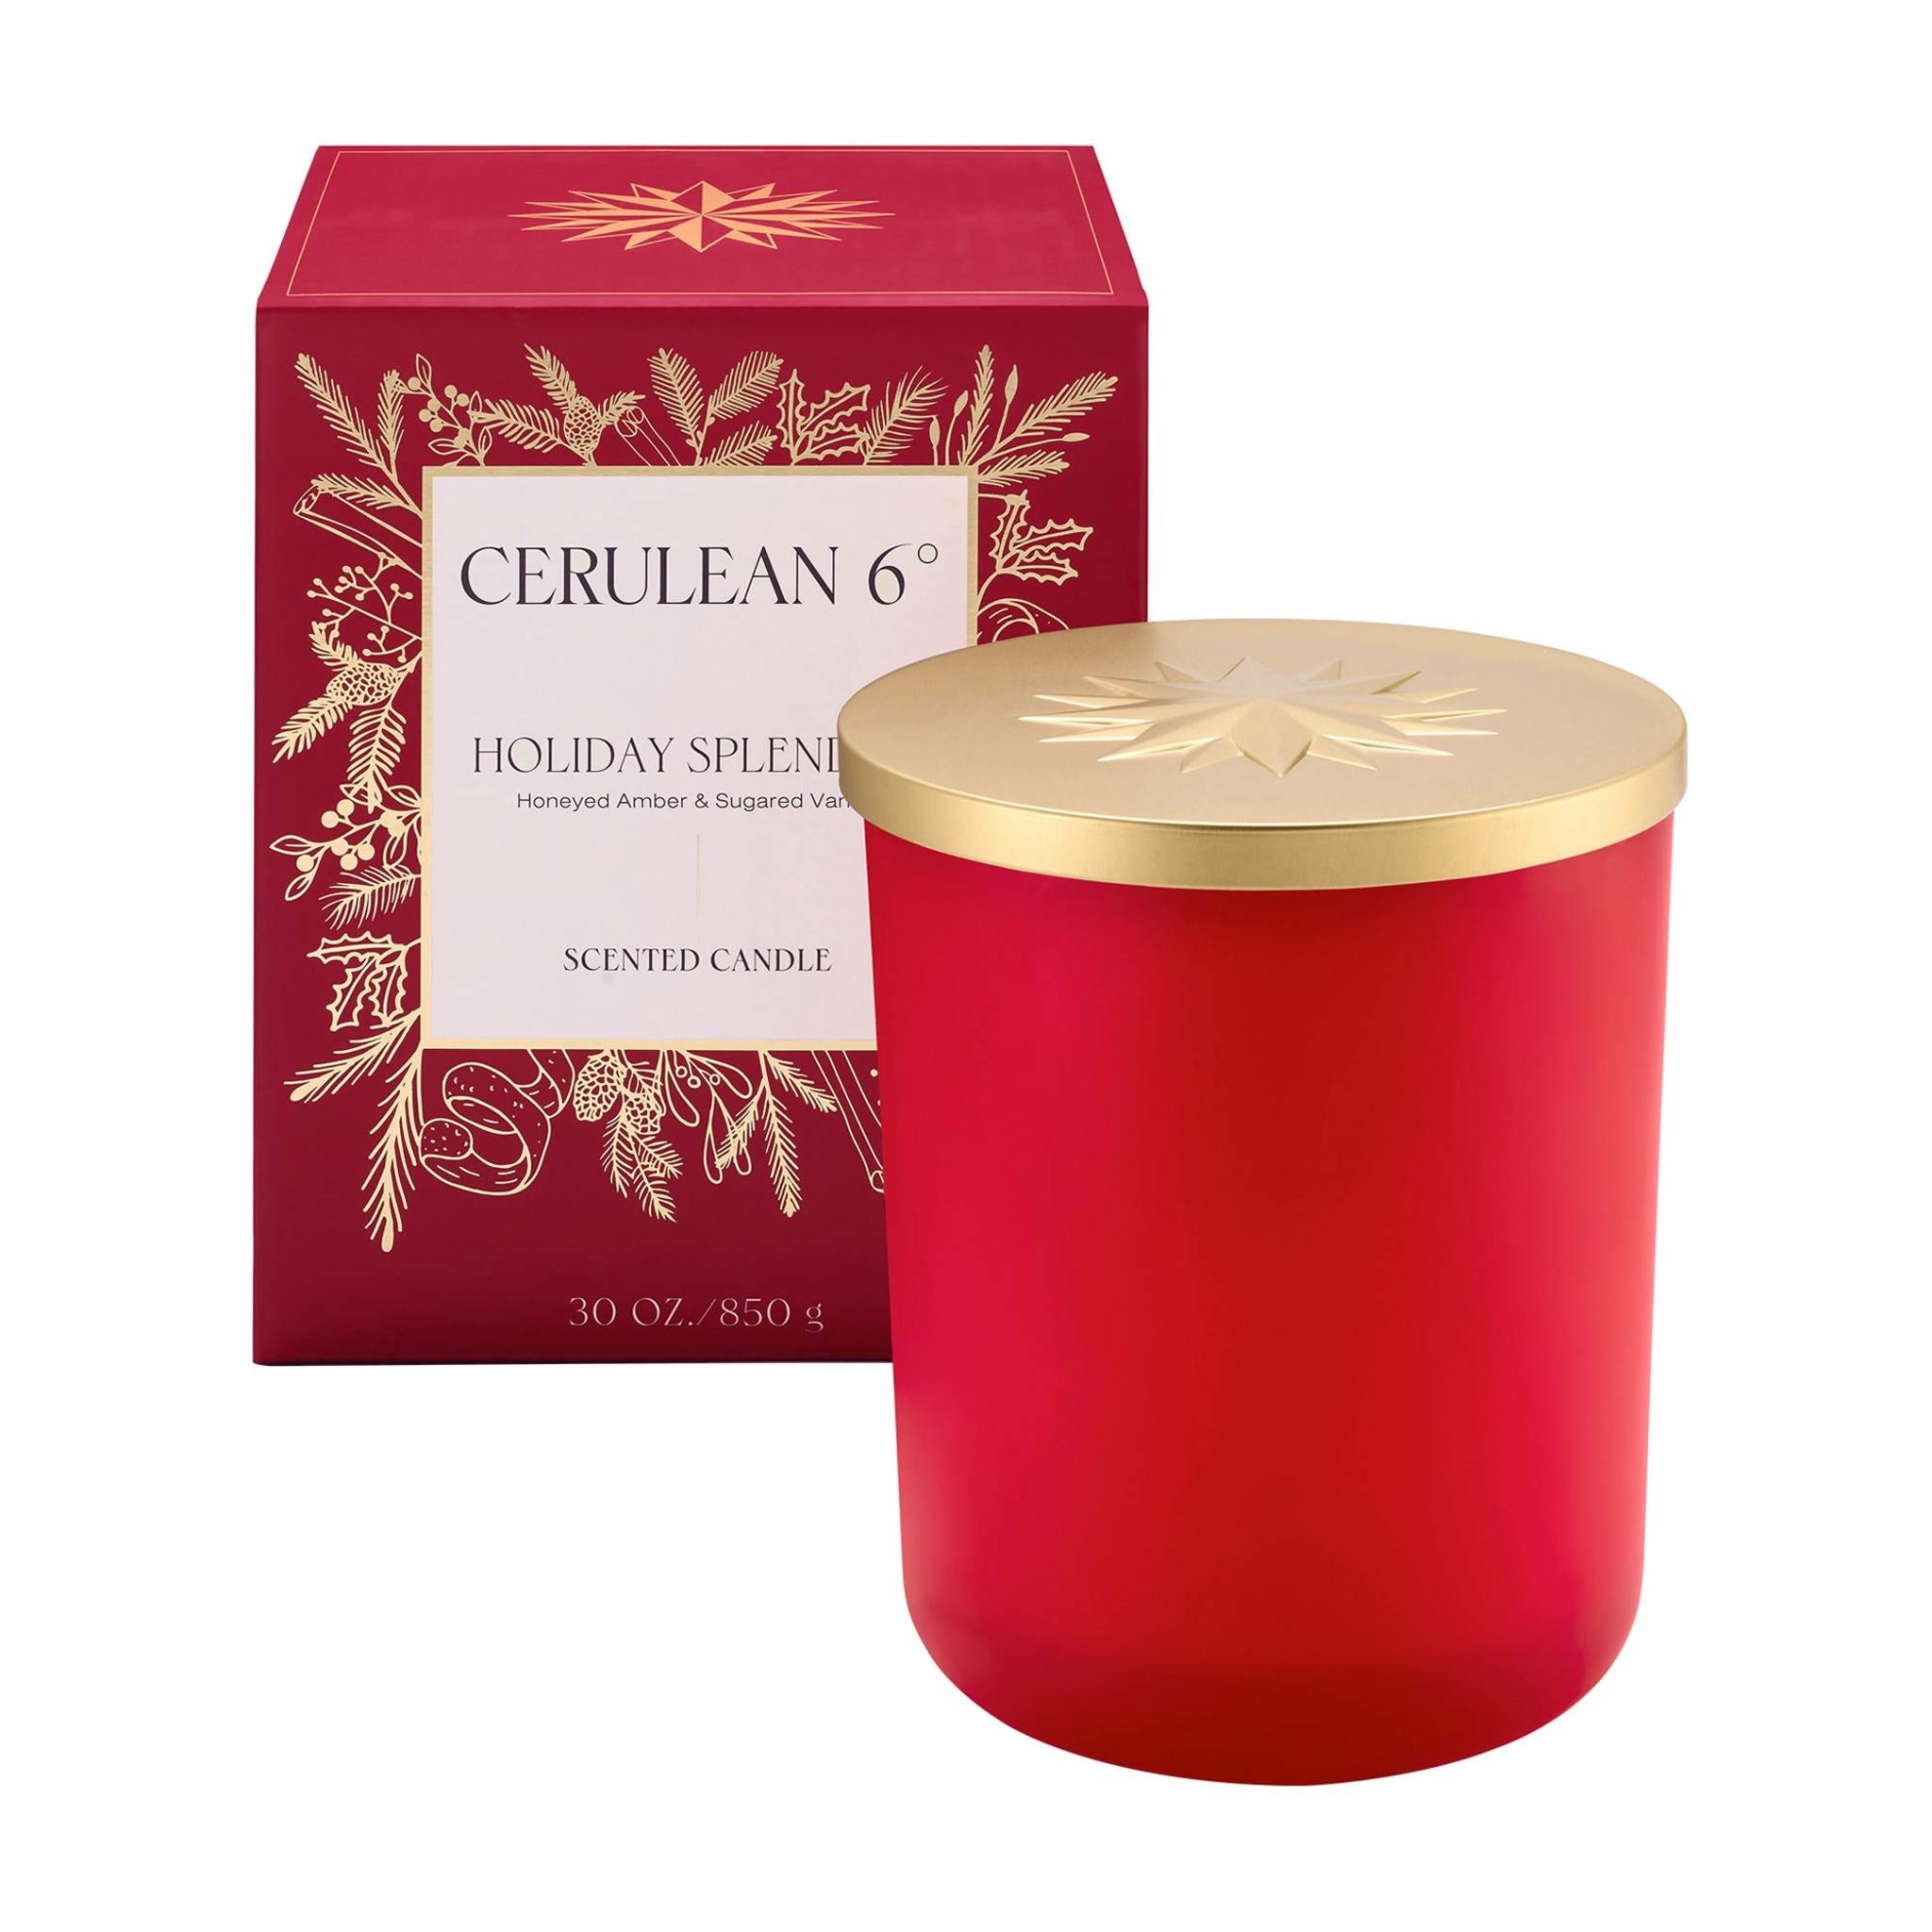 Cerulean 6 Holiday Splendor Luxury Candle Size variant: 30 oz main image.